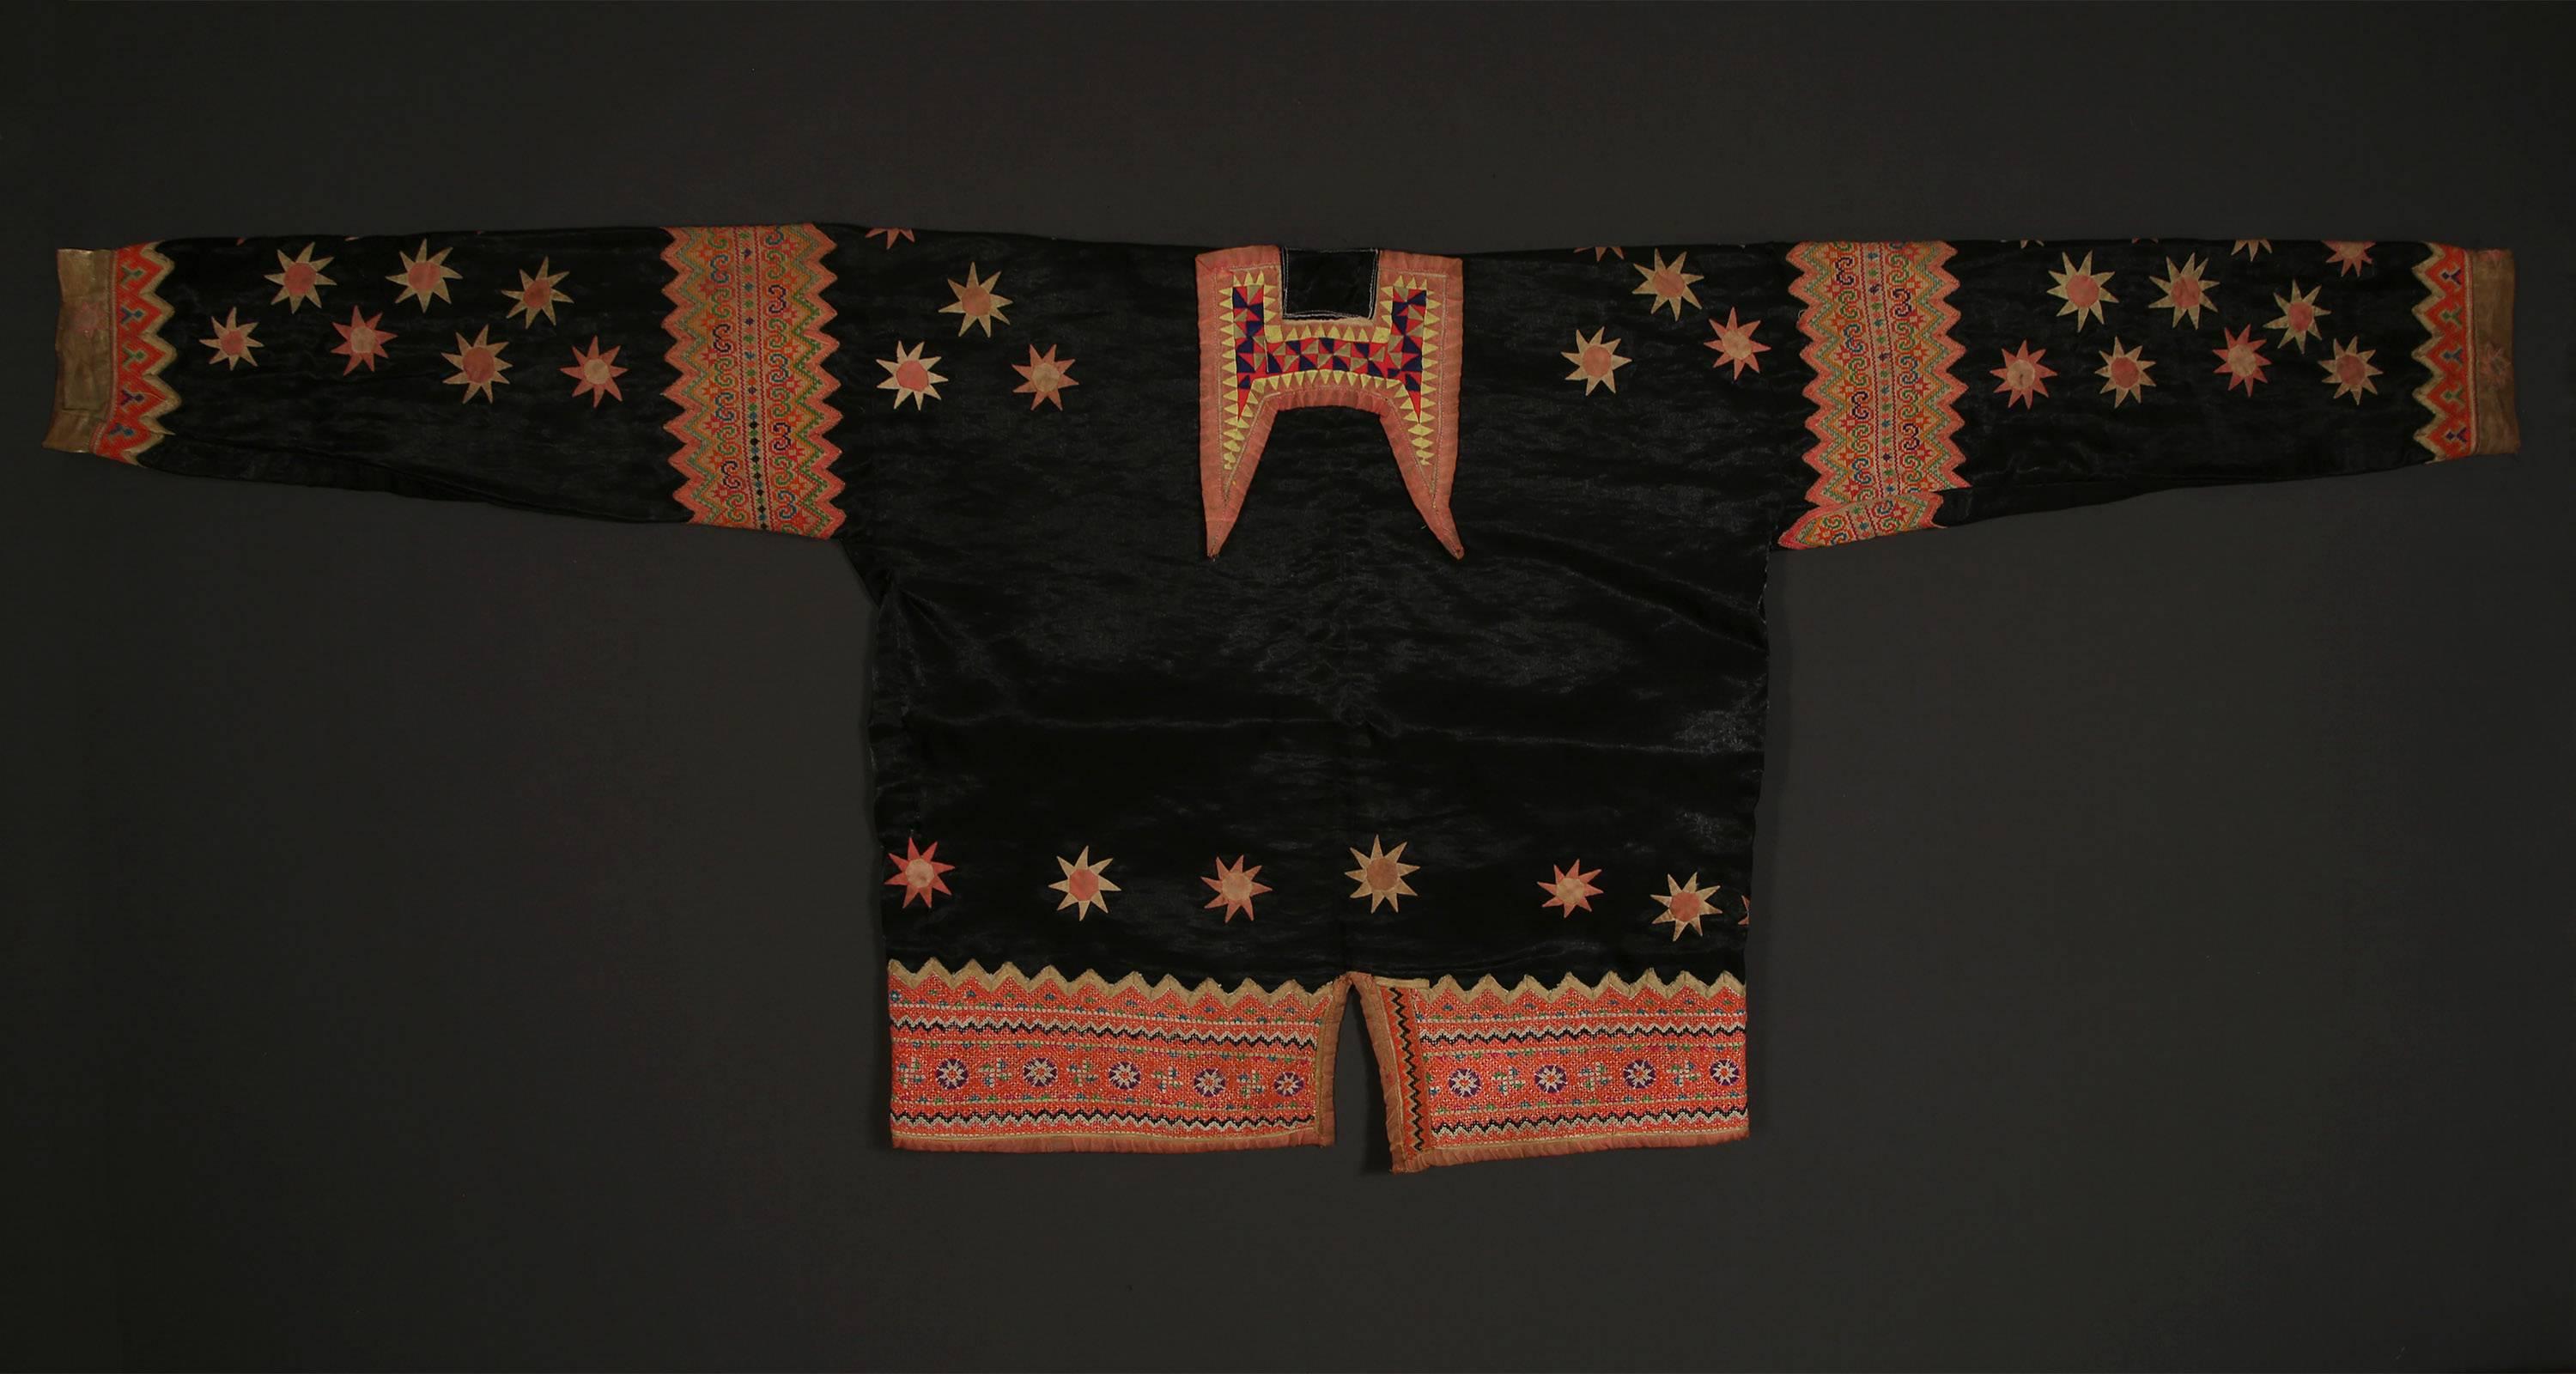 Schwarze Sternjacke des Hmong-Volkes in Laos, Anfang des 20.
Eine kühn verzierte Jacke mit leuchtenden Sternapplikationen und komplizierten Kreuzstichstickereien ist ein einzigartiges Beispiel für die traditionelle Trachtenherstellung des